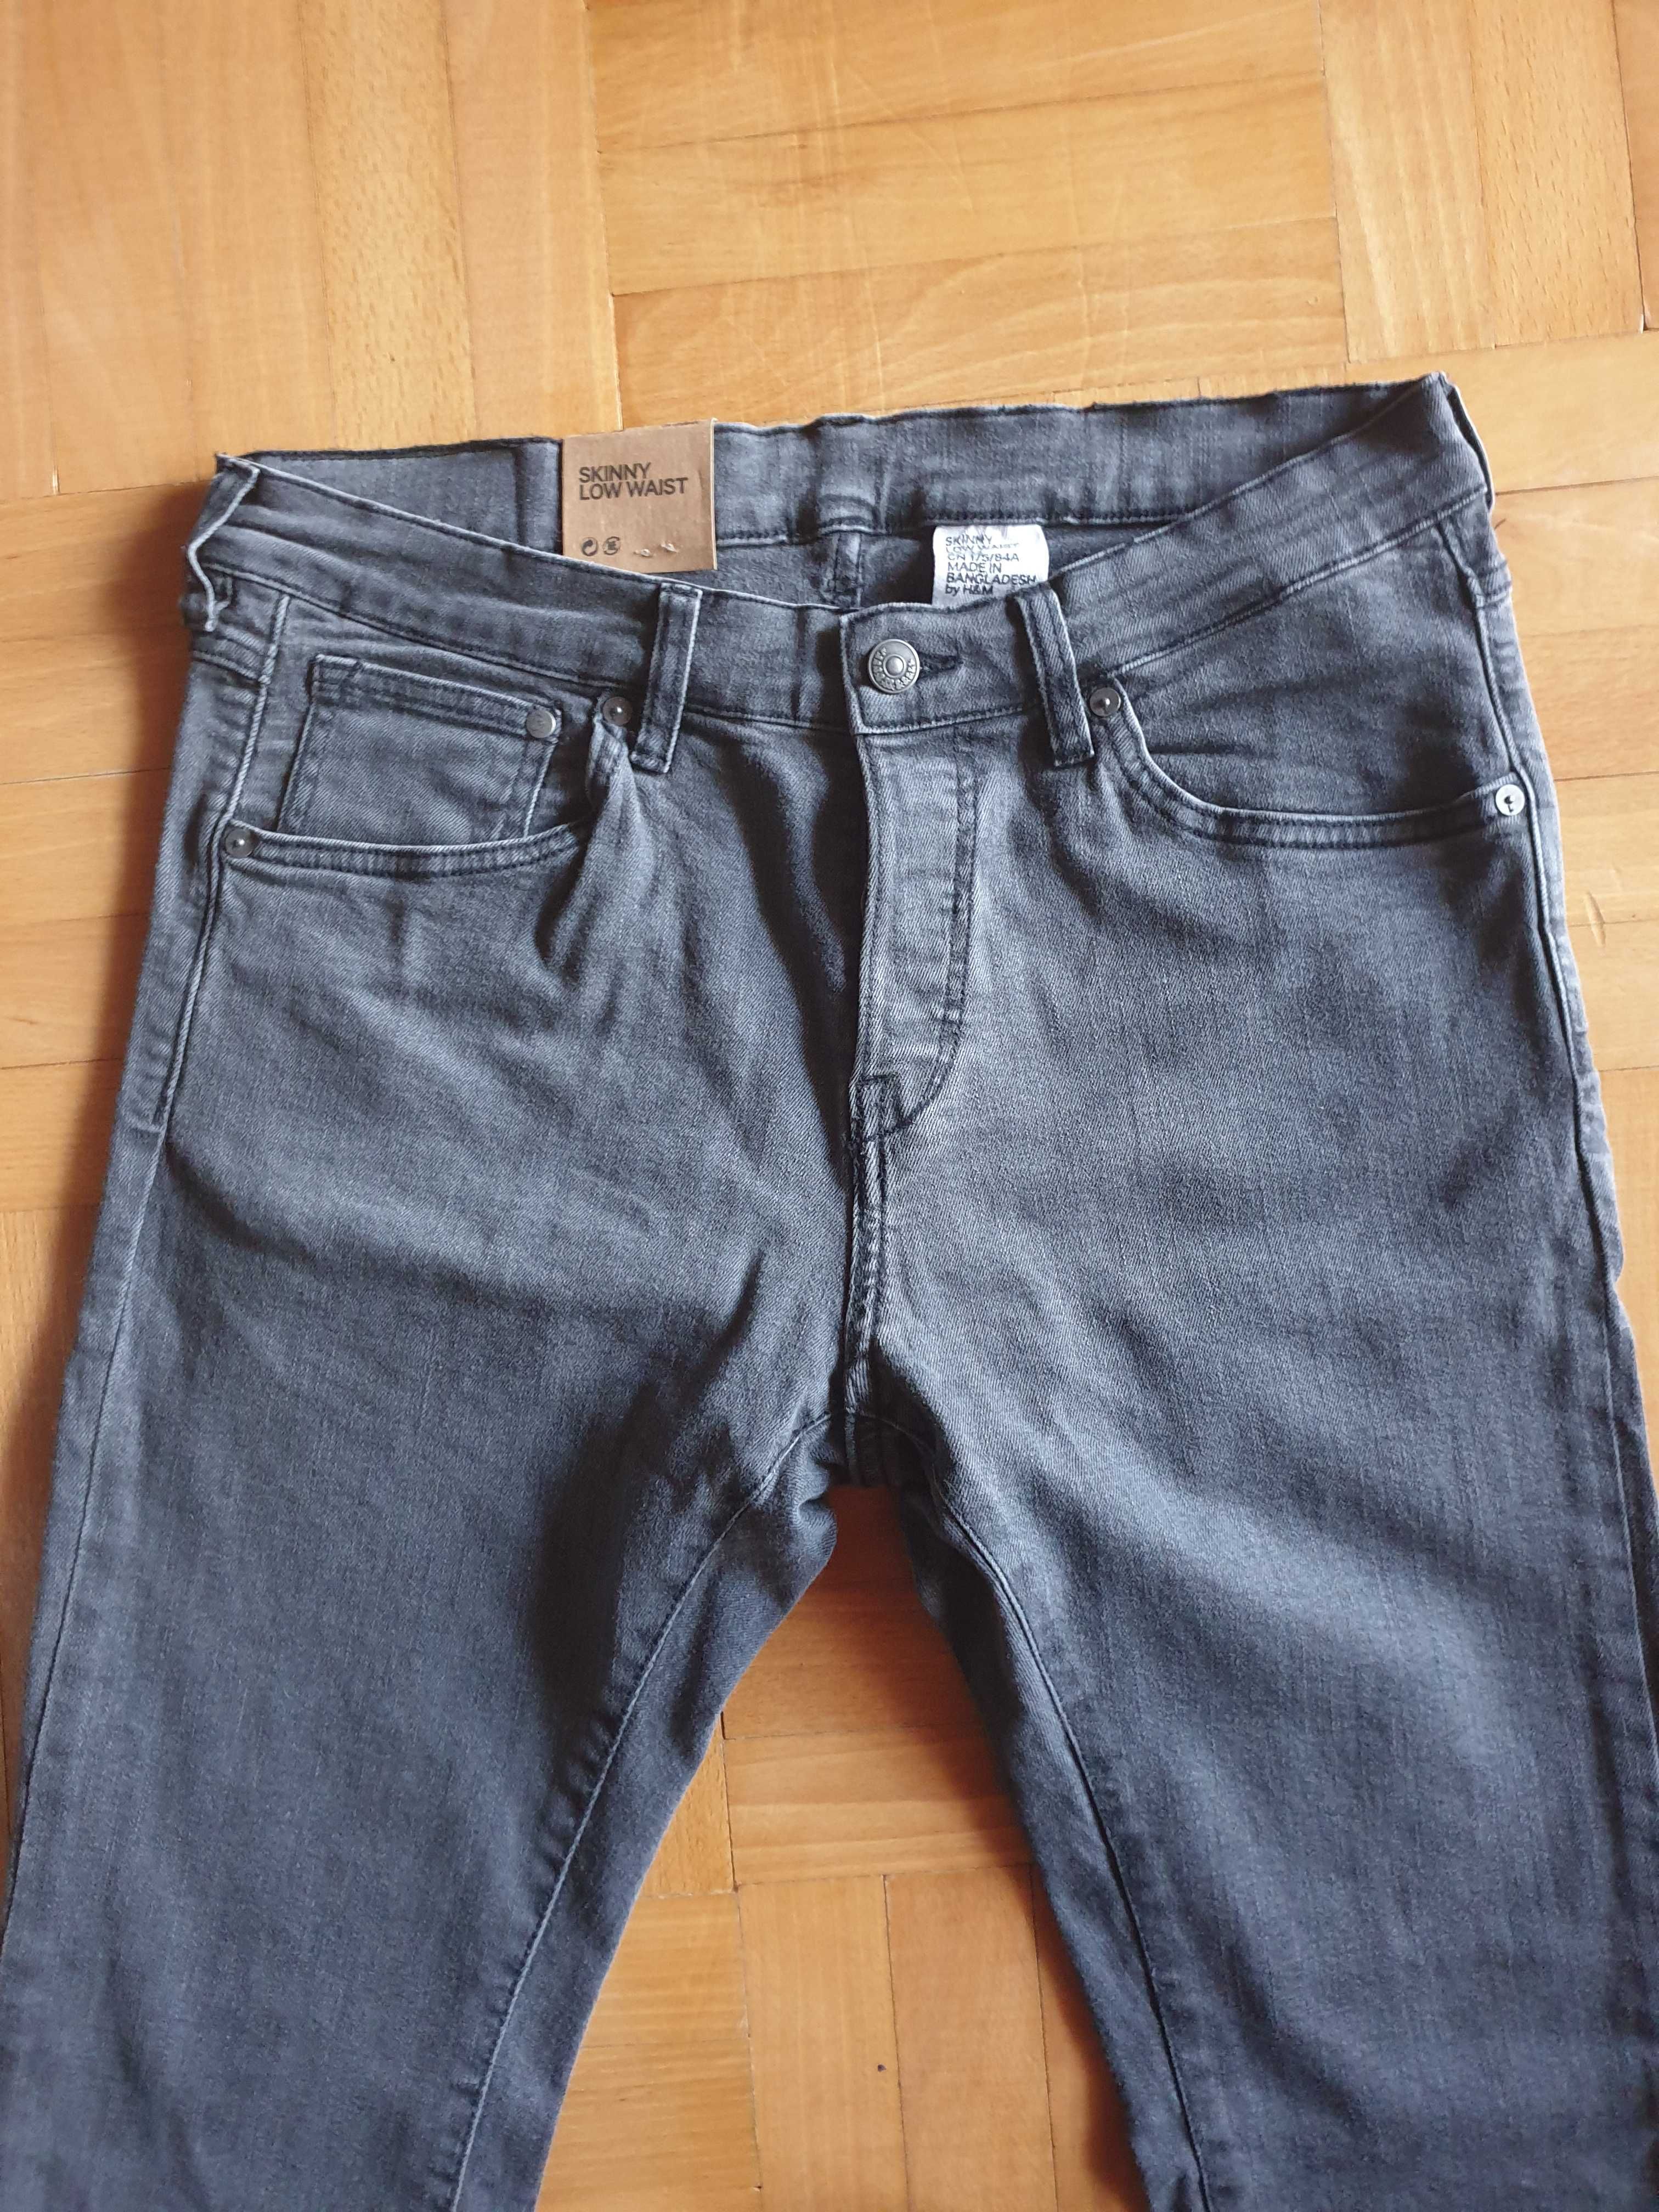 Spodnie Jeansowe H&M Denim Skinny Low Waist 33/32 Nowe